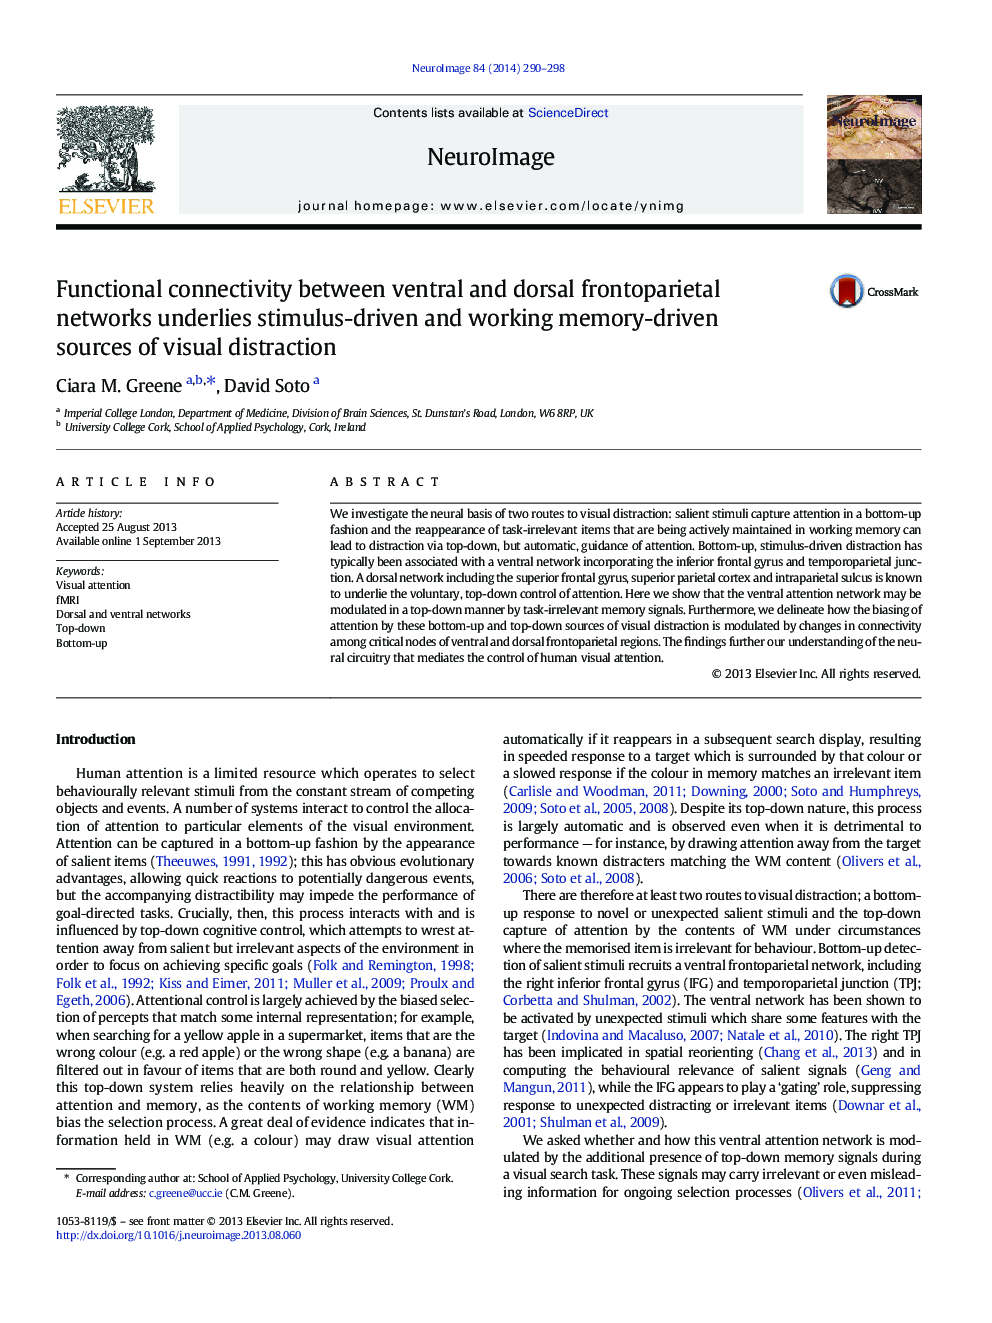 اتصال به عملکرد بین شبکه های شکمی و پشتی فوروپارتیال بر اساس منابع محرک محور و کار بر روی حافظه محور از حواس پرتی بصری 